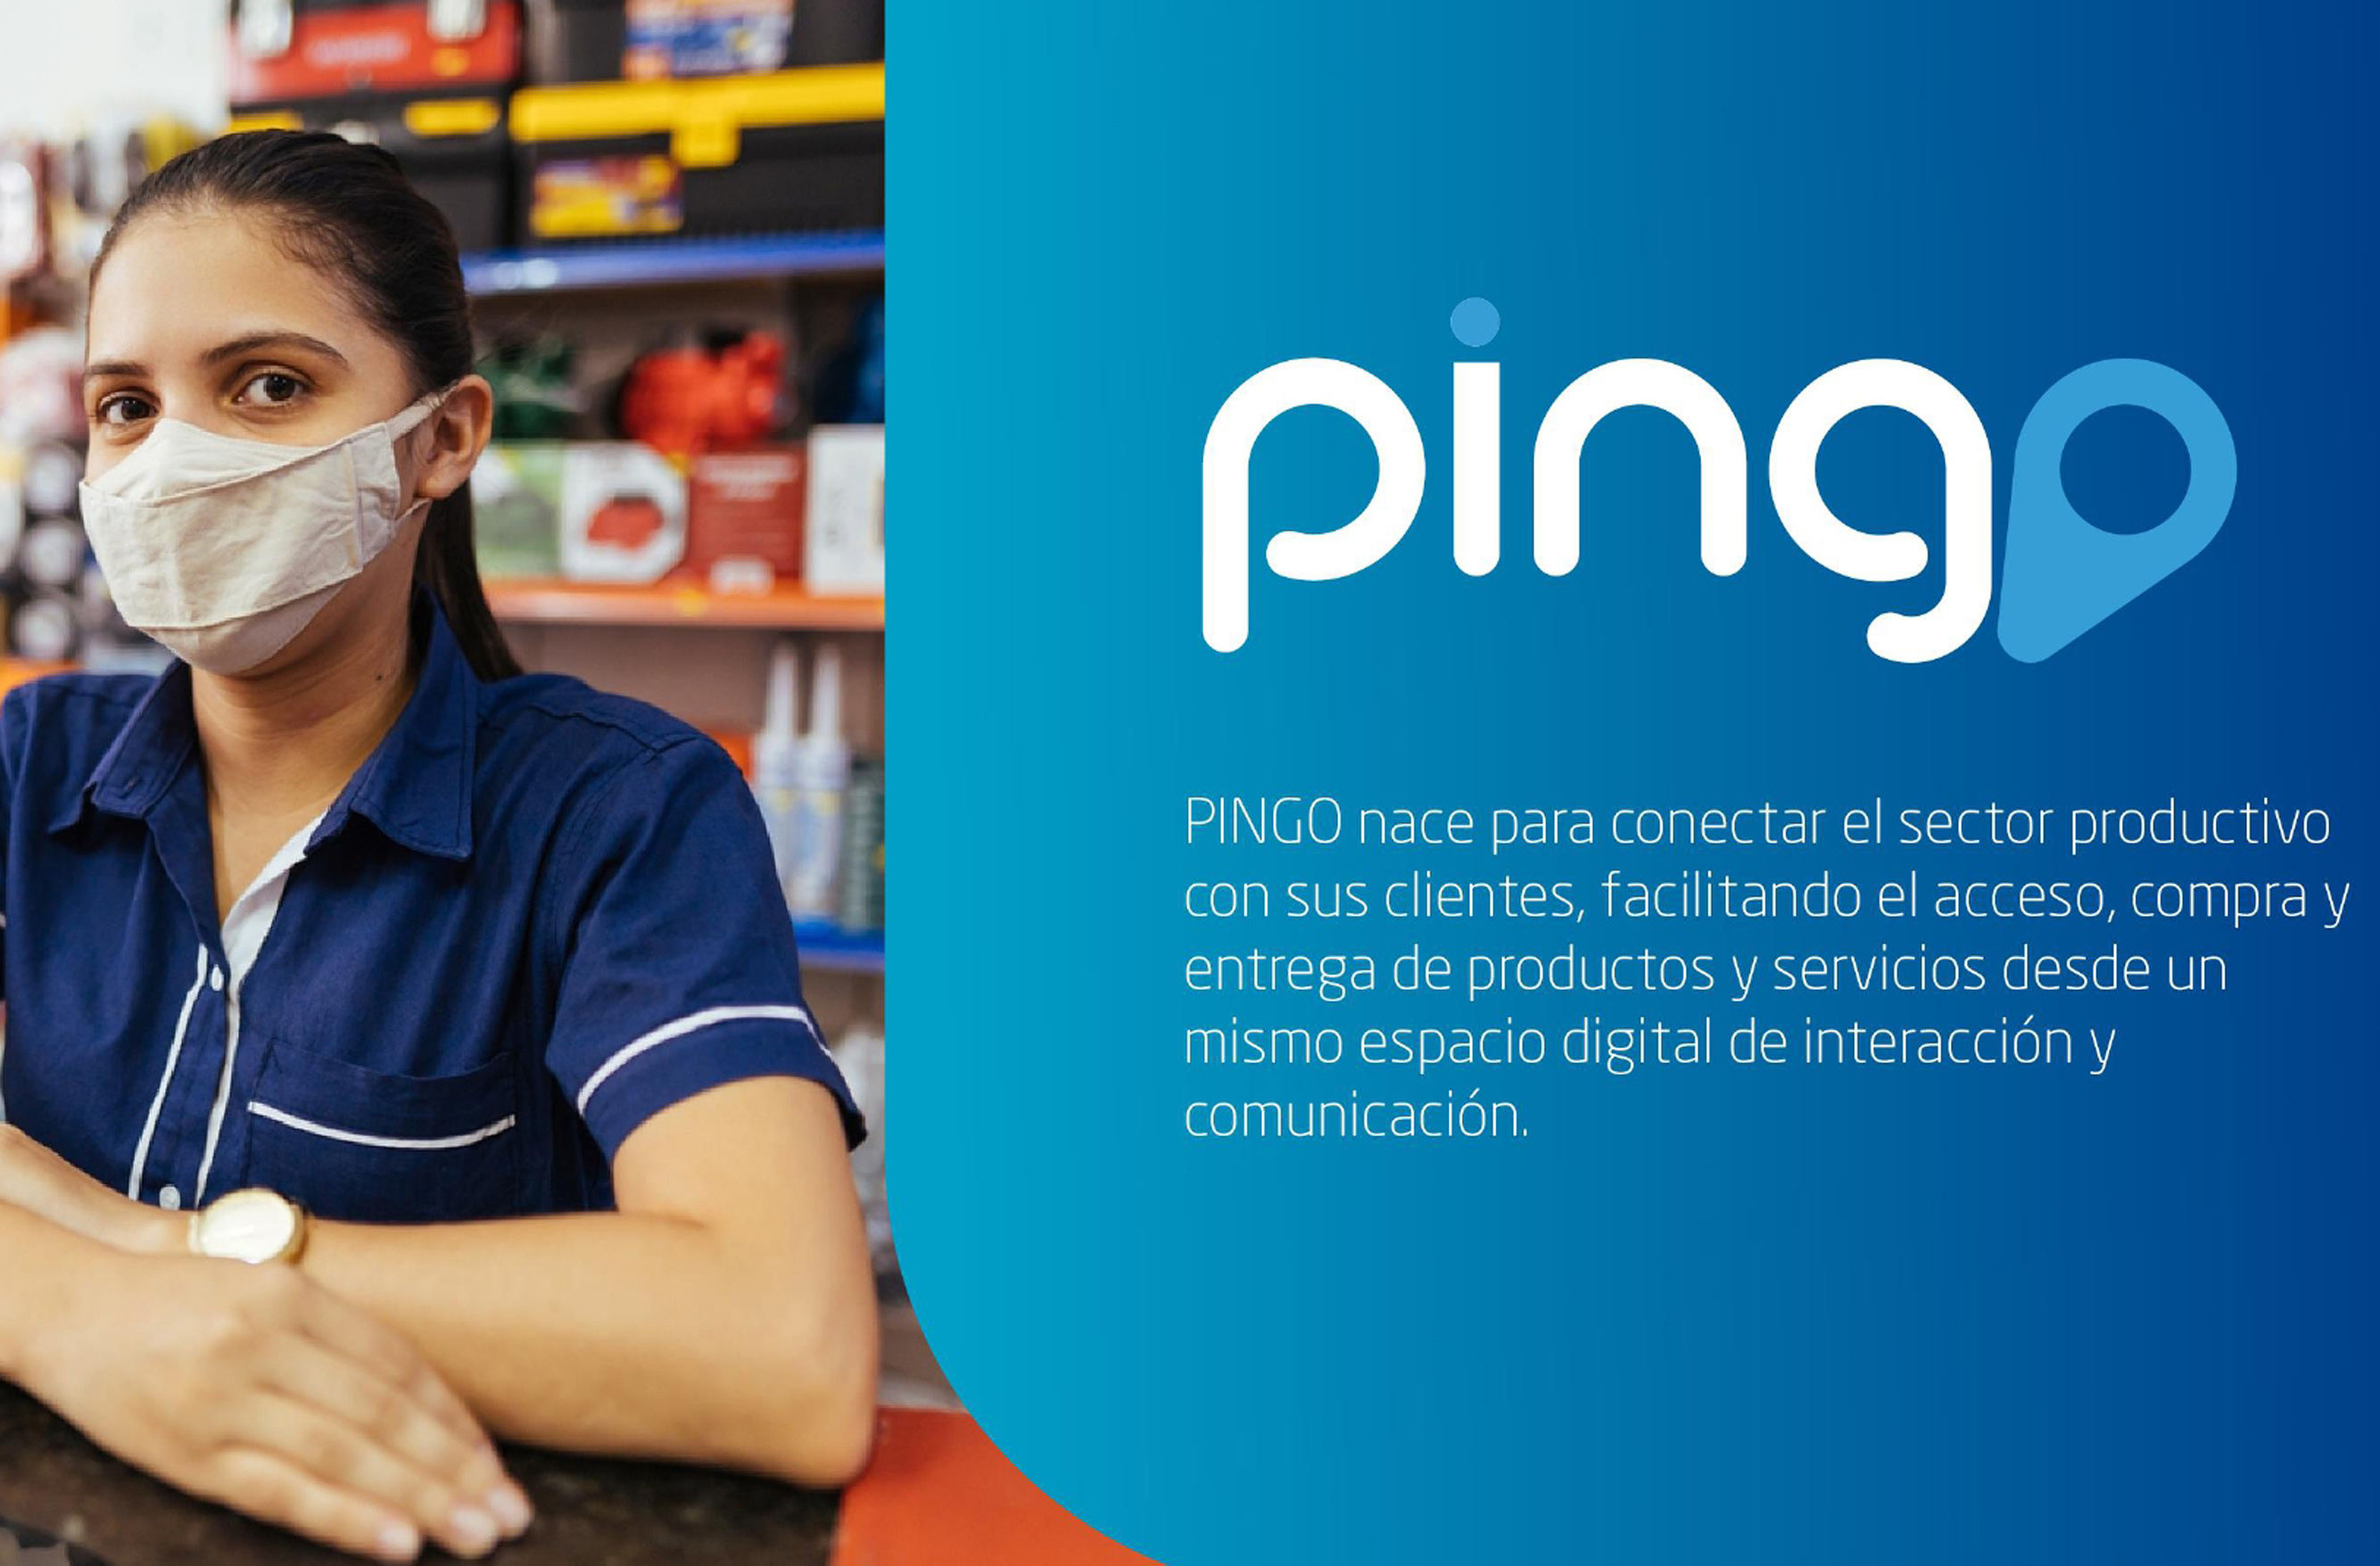 PinGo busca conectar el sector productivo con sus clientes desde una app.